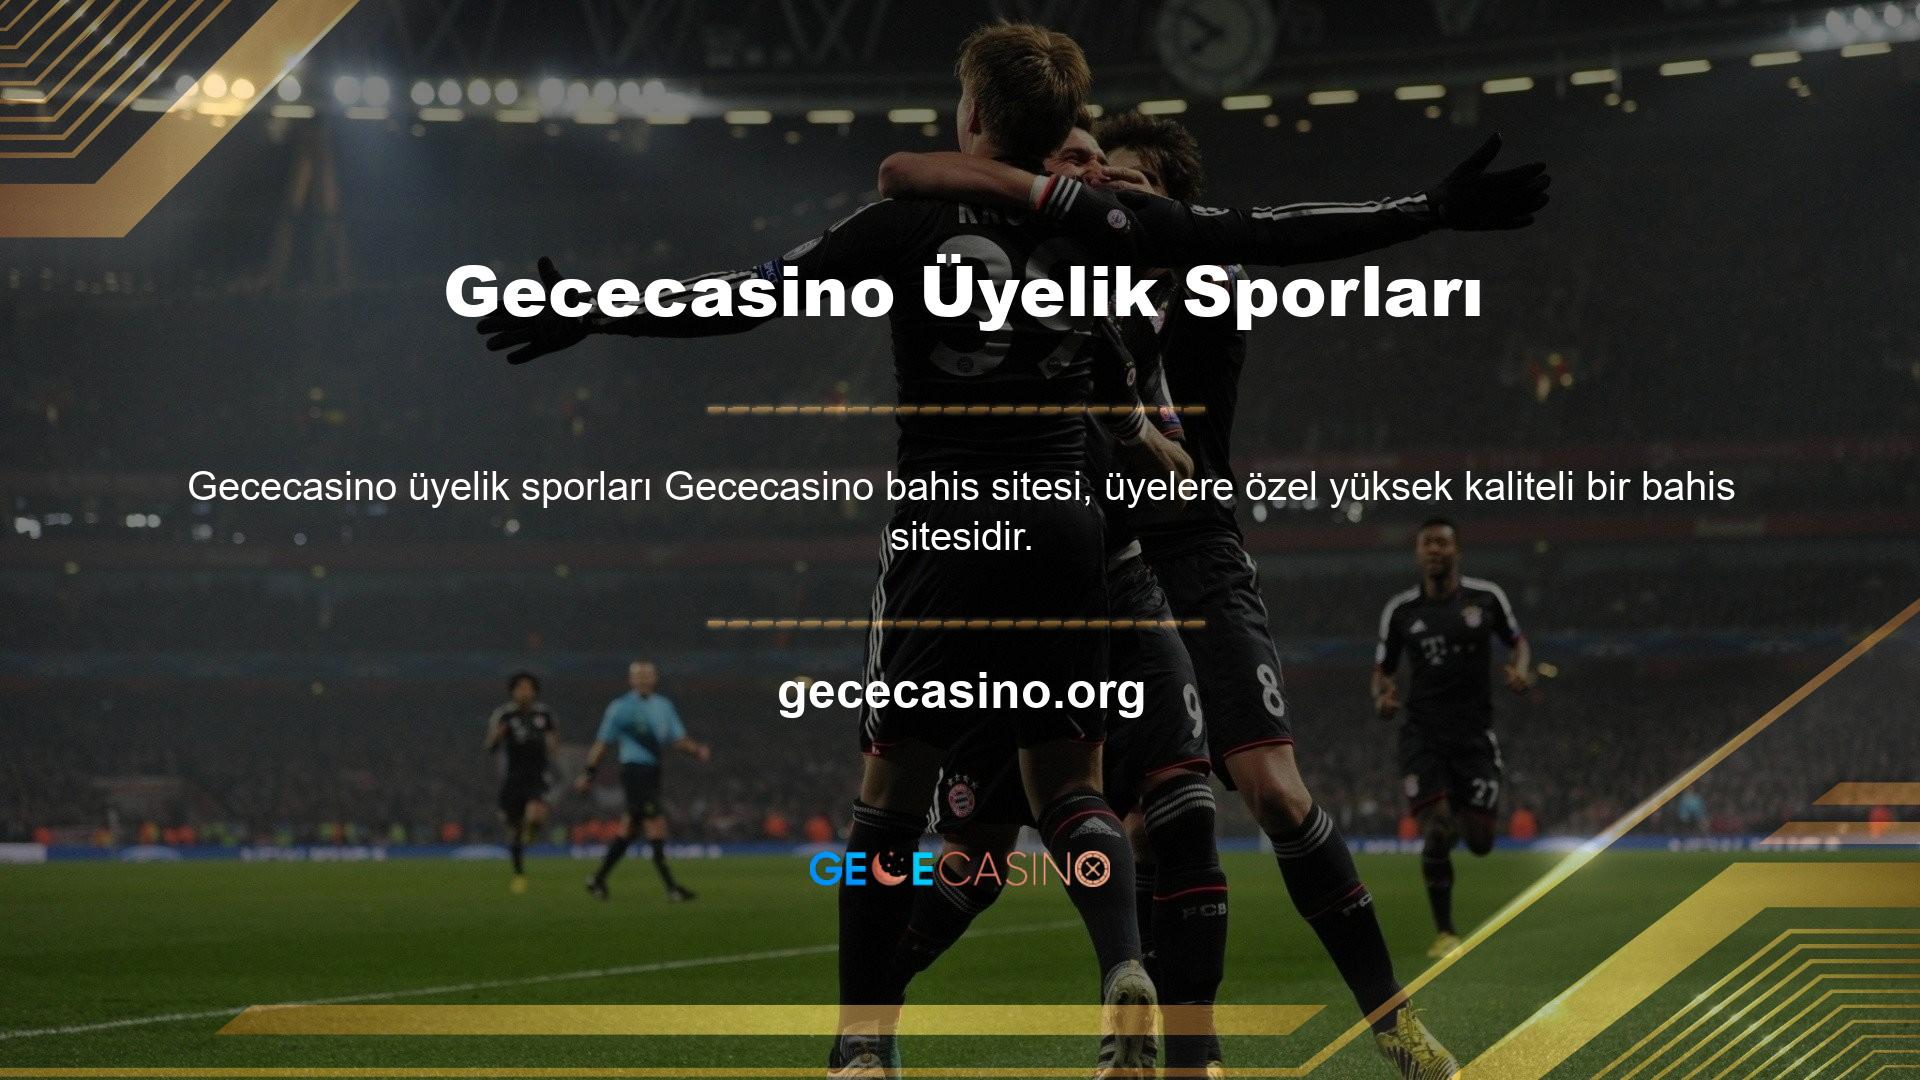 Kullanıcılar Gececasino Sports üyelik kayıt işlemini tamamladıktan sonra online bahis yapmaya başlayabilirler